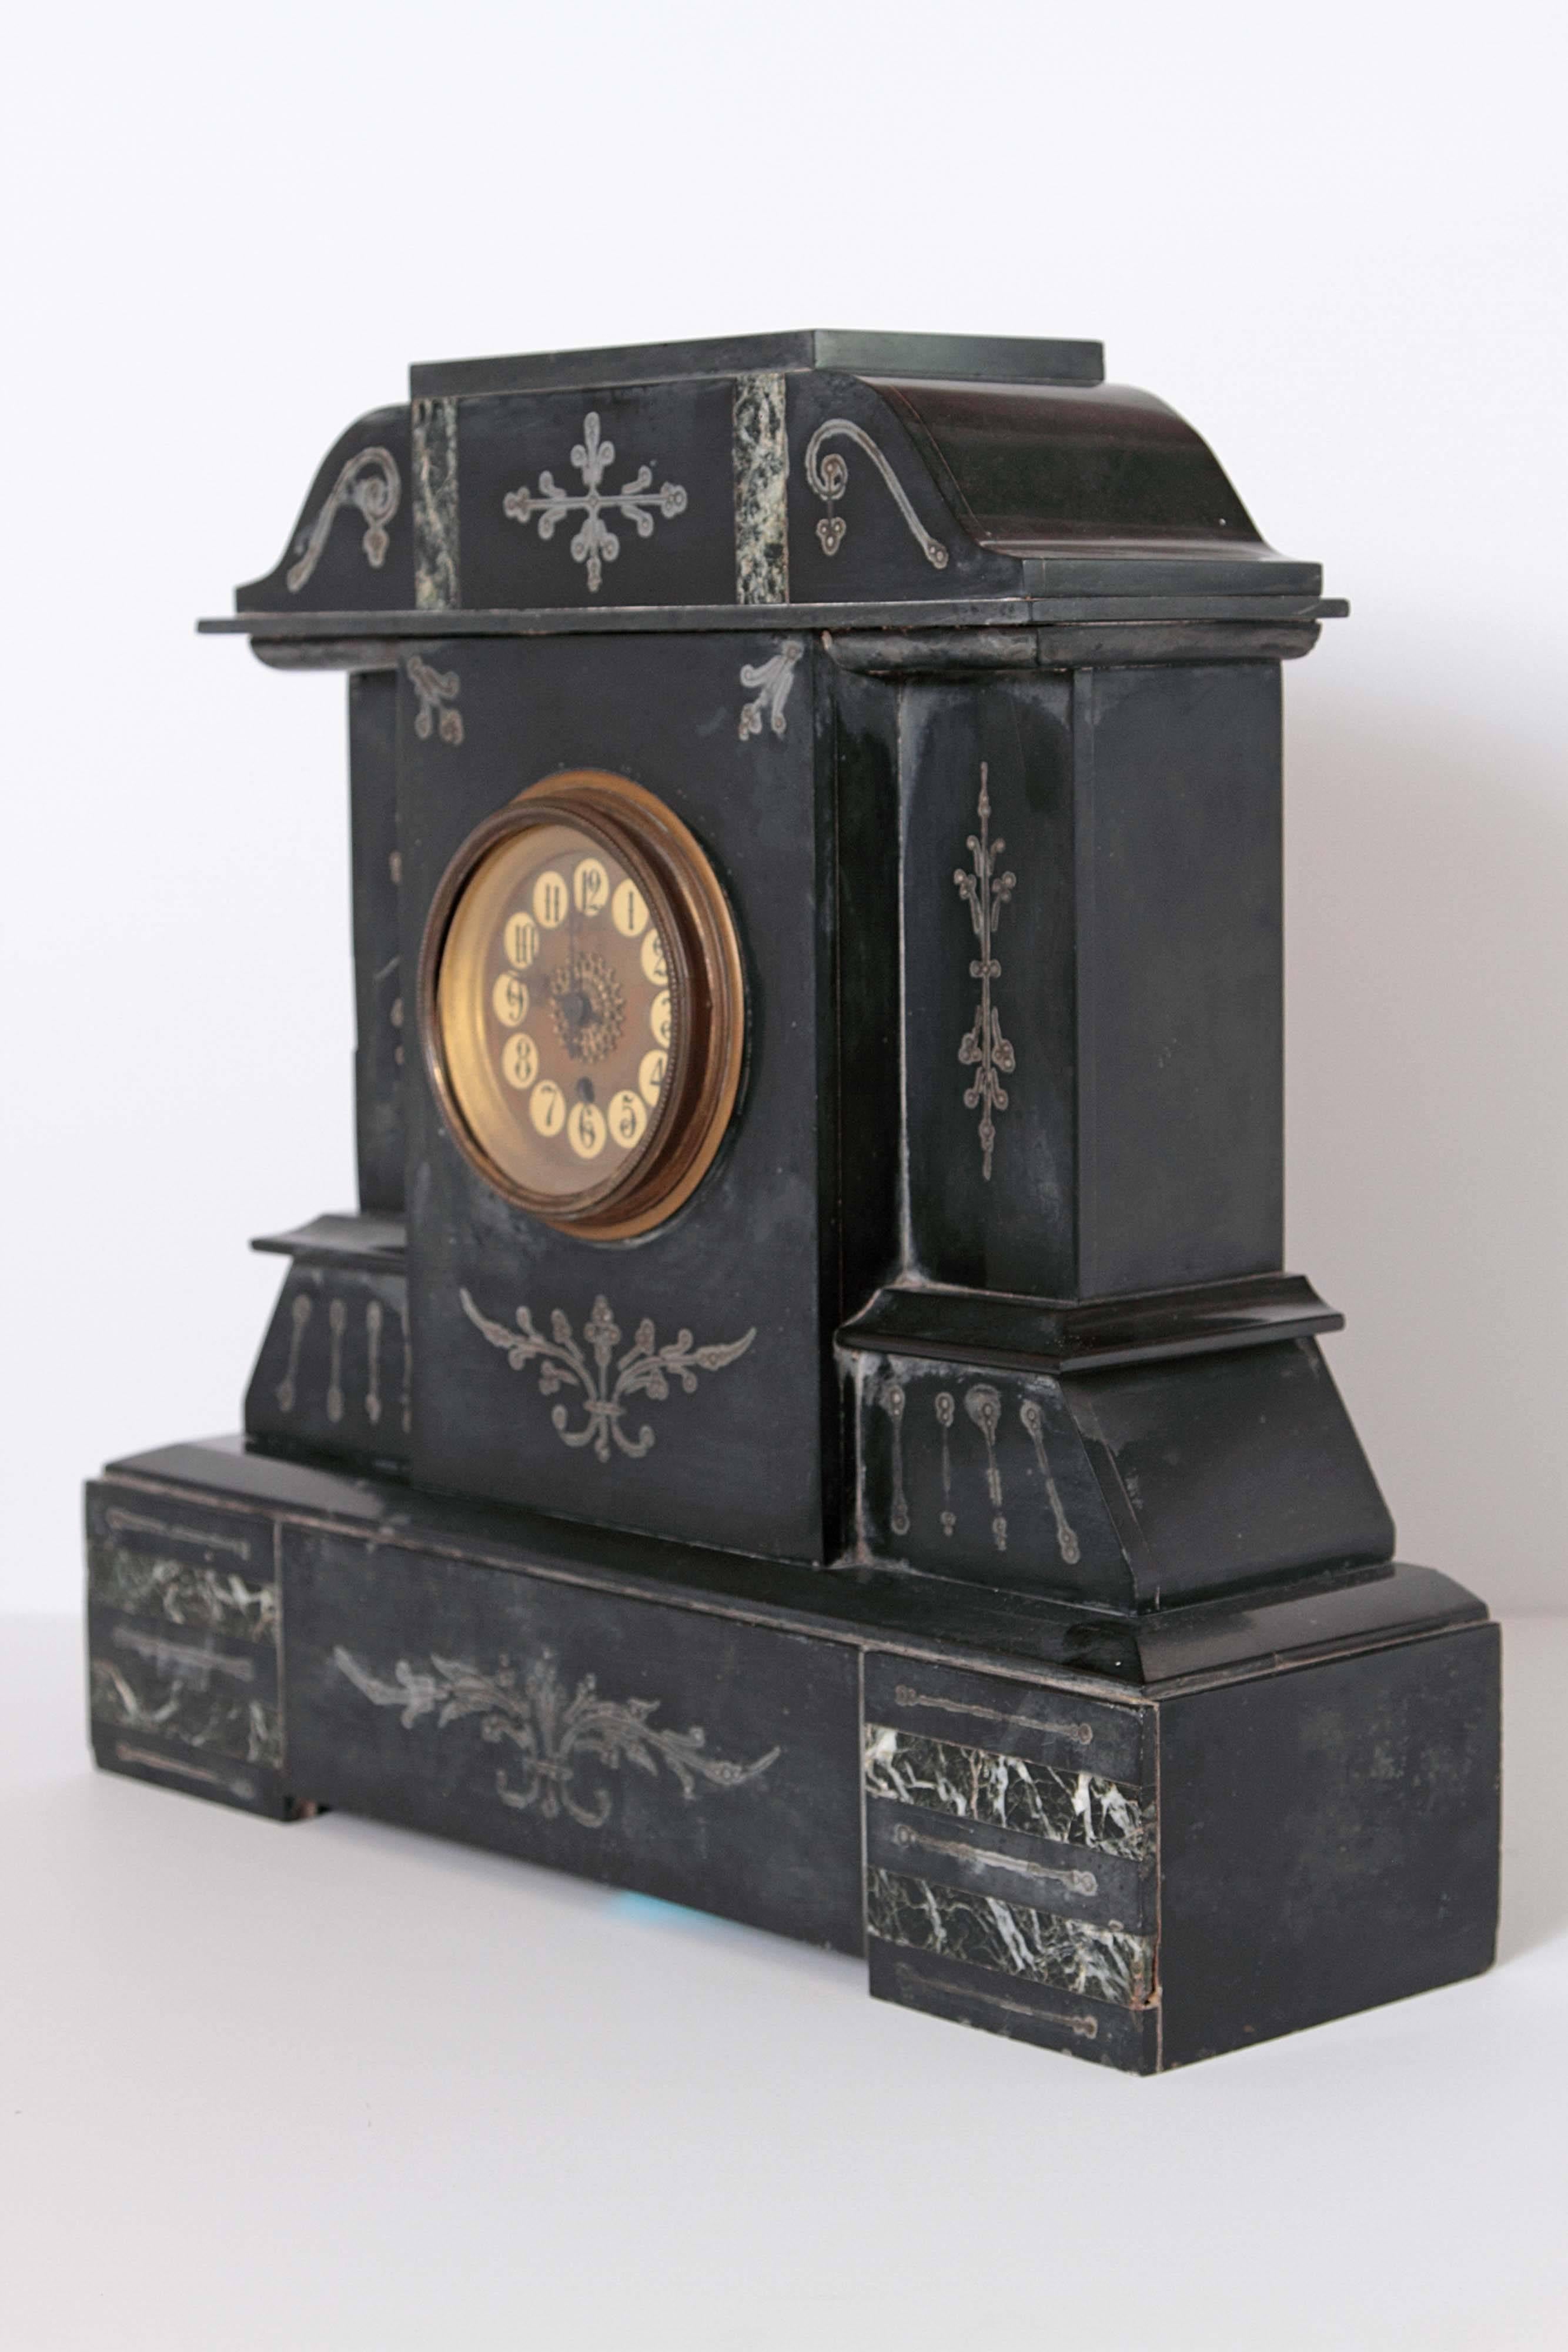 Belle pendule de cheminée en marbre français de l'époque victorienne, datant de 1880, en marbre nero belgio noir de jais. Cette pièce est dans un état fabuleux et comprend des détails peints à la main autour du visage de l'horloge. 

Usure mineure